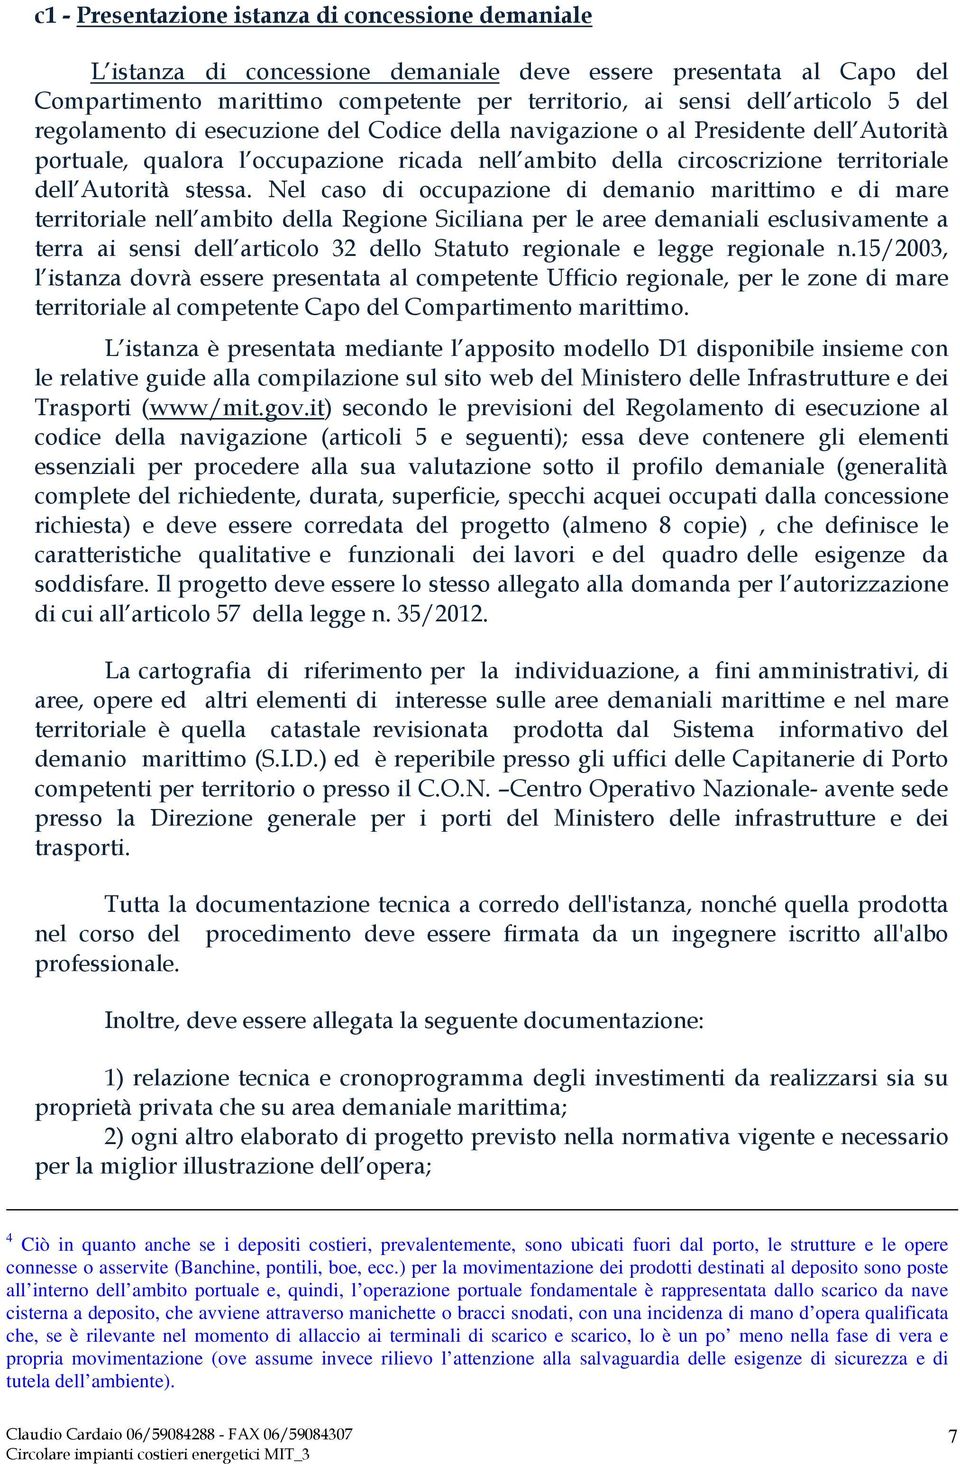 Nel caso di occupazione di demanio marittimo e di mare territoriale nell ambito della Regione Siciliana per le aree demaniali esclusivamente a terra ai sensi dell articolo 32 dello Statuto regionale